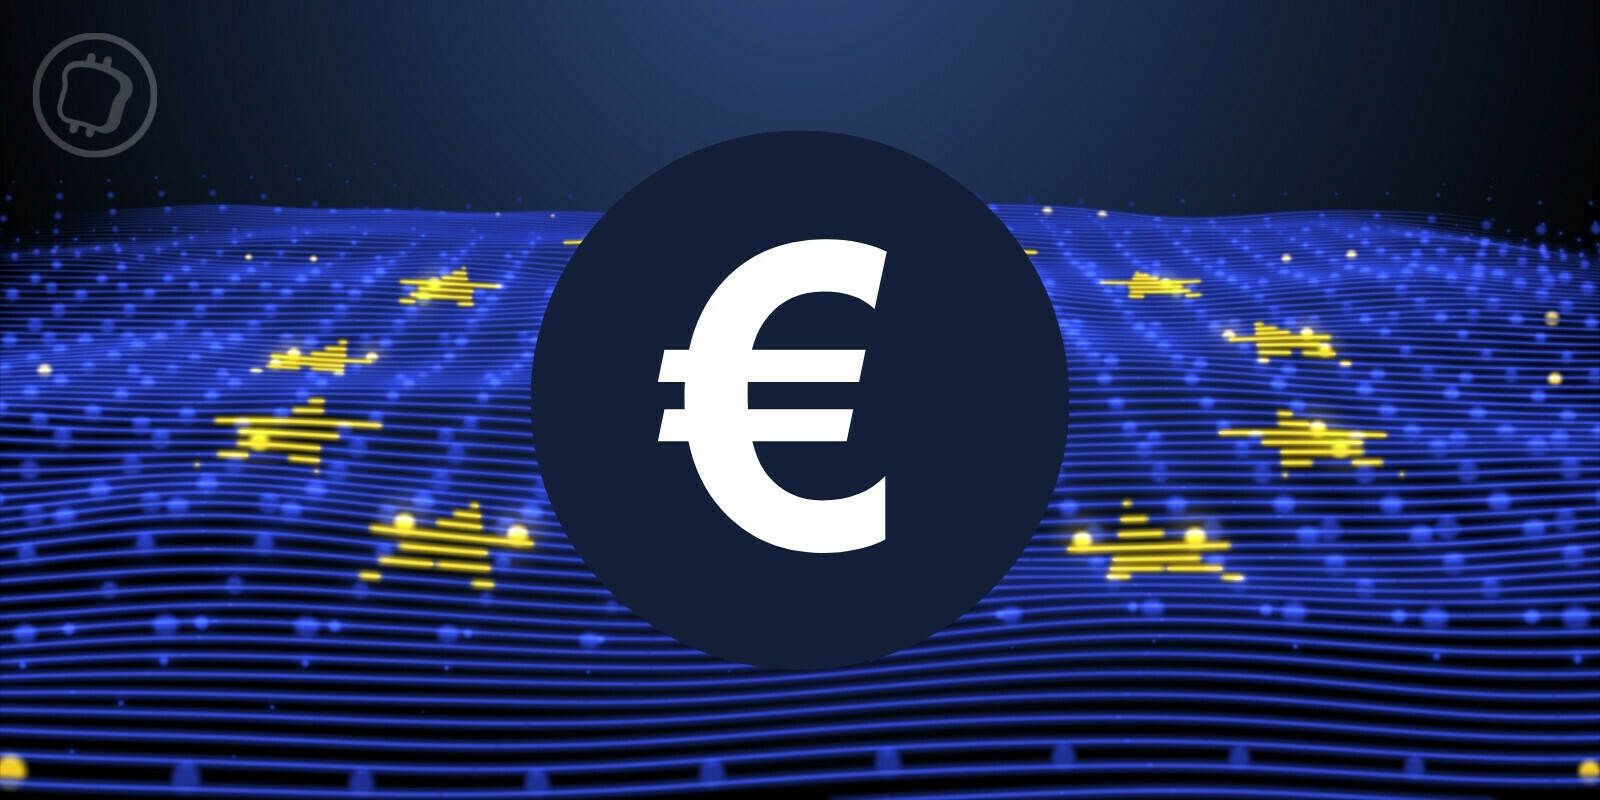 Les monnaies numériques de banques centrales, « seule solution » pour préserver le système monétaire, selon la BCE